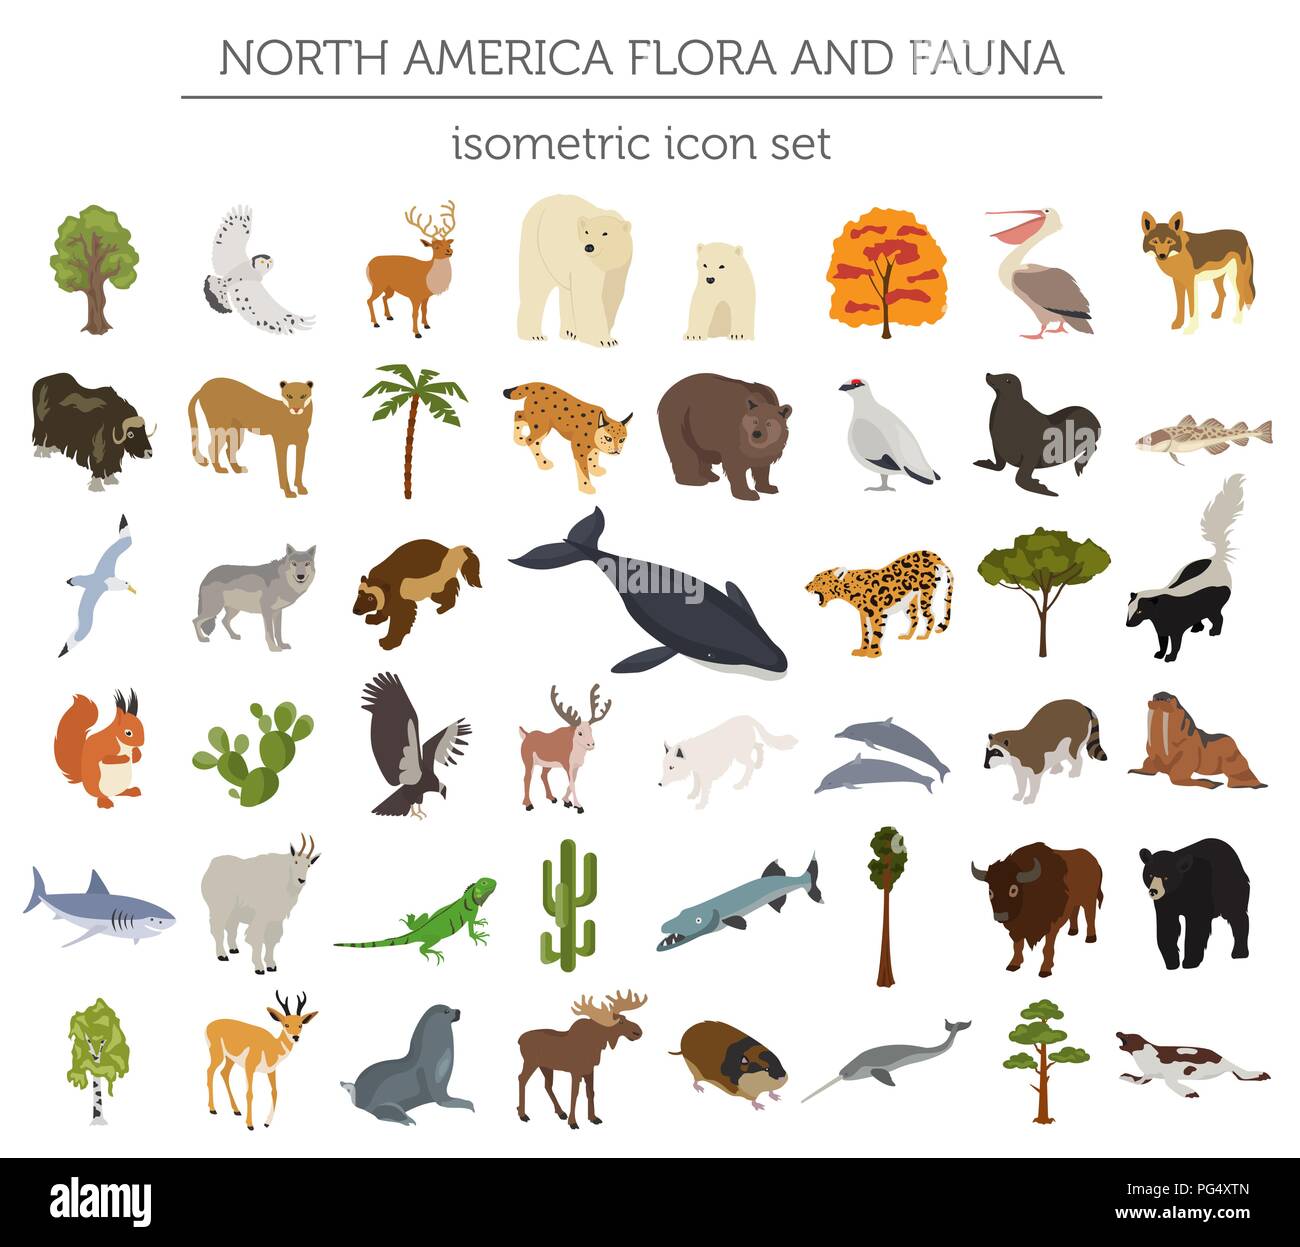 Isometrische 3d-Nordamerika Flora und Fauna Elemente. Tiere, Vögel und Sea Life. Ihre eigene Geographie Infografiken Sammlung aufzubauen. Vektor illustratio Stock Vektor